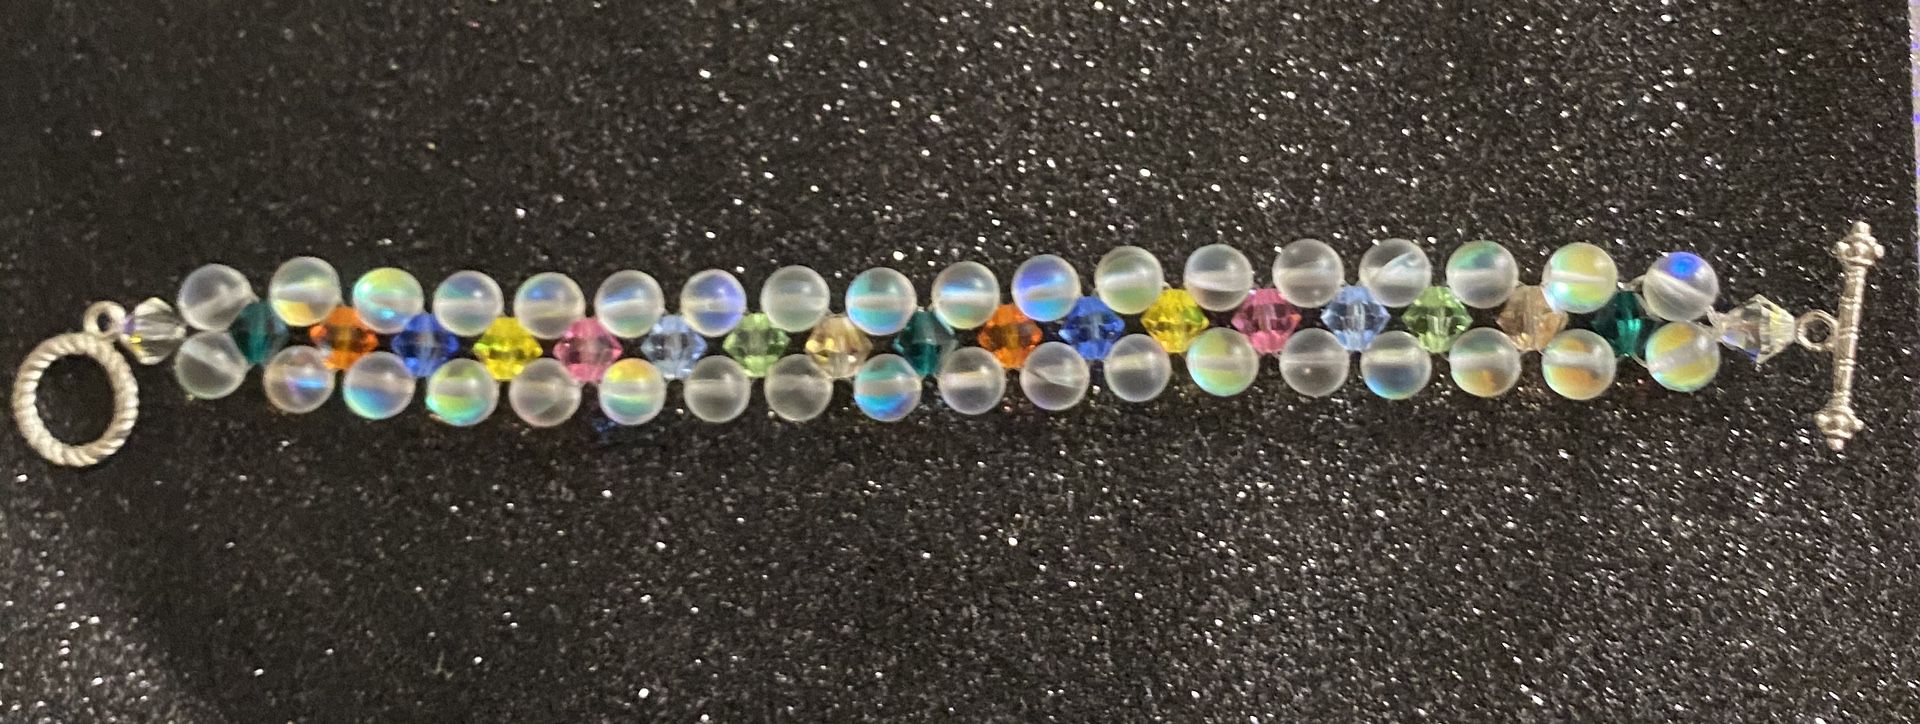 7” Moonstone & Swarovski crystal bicone multicolor bead bracelet.